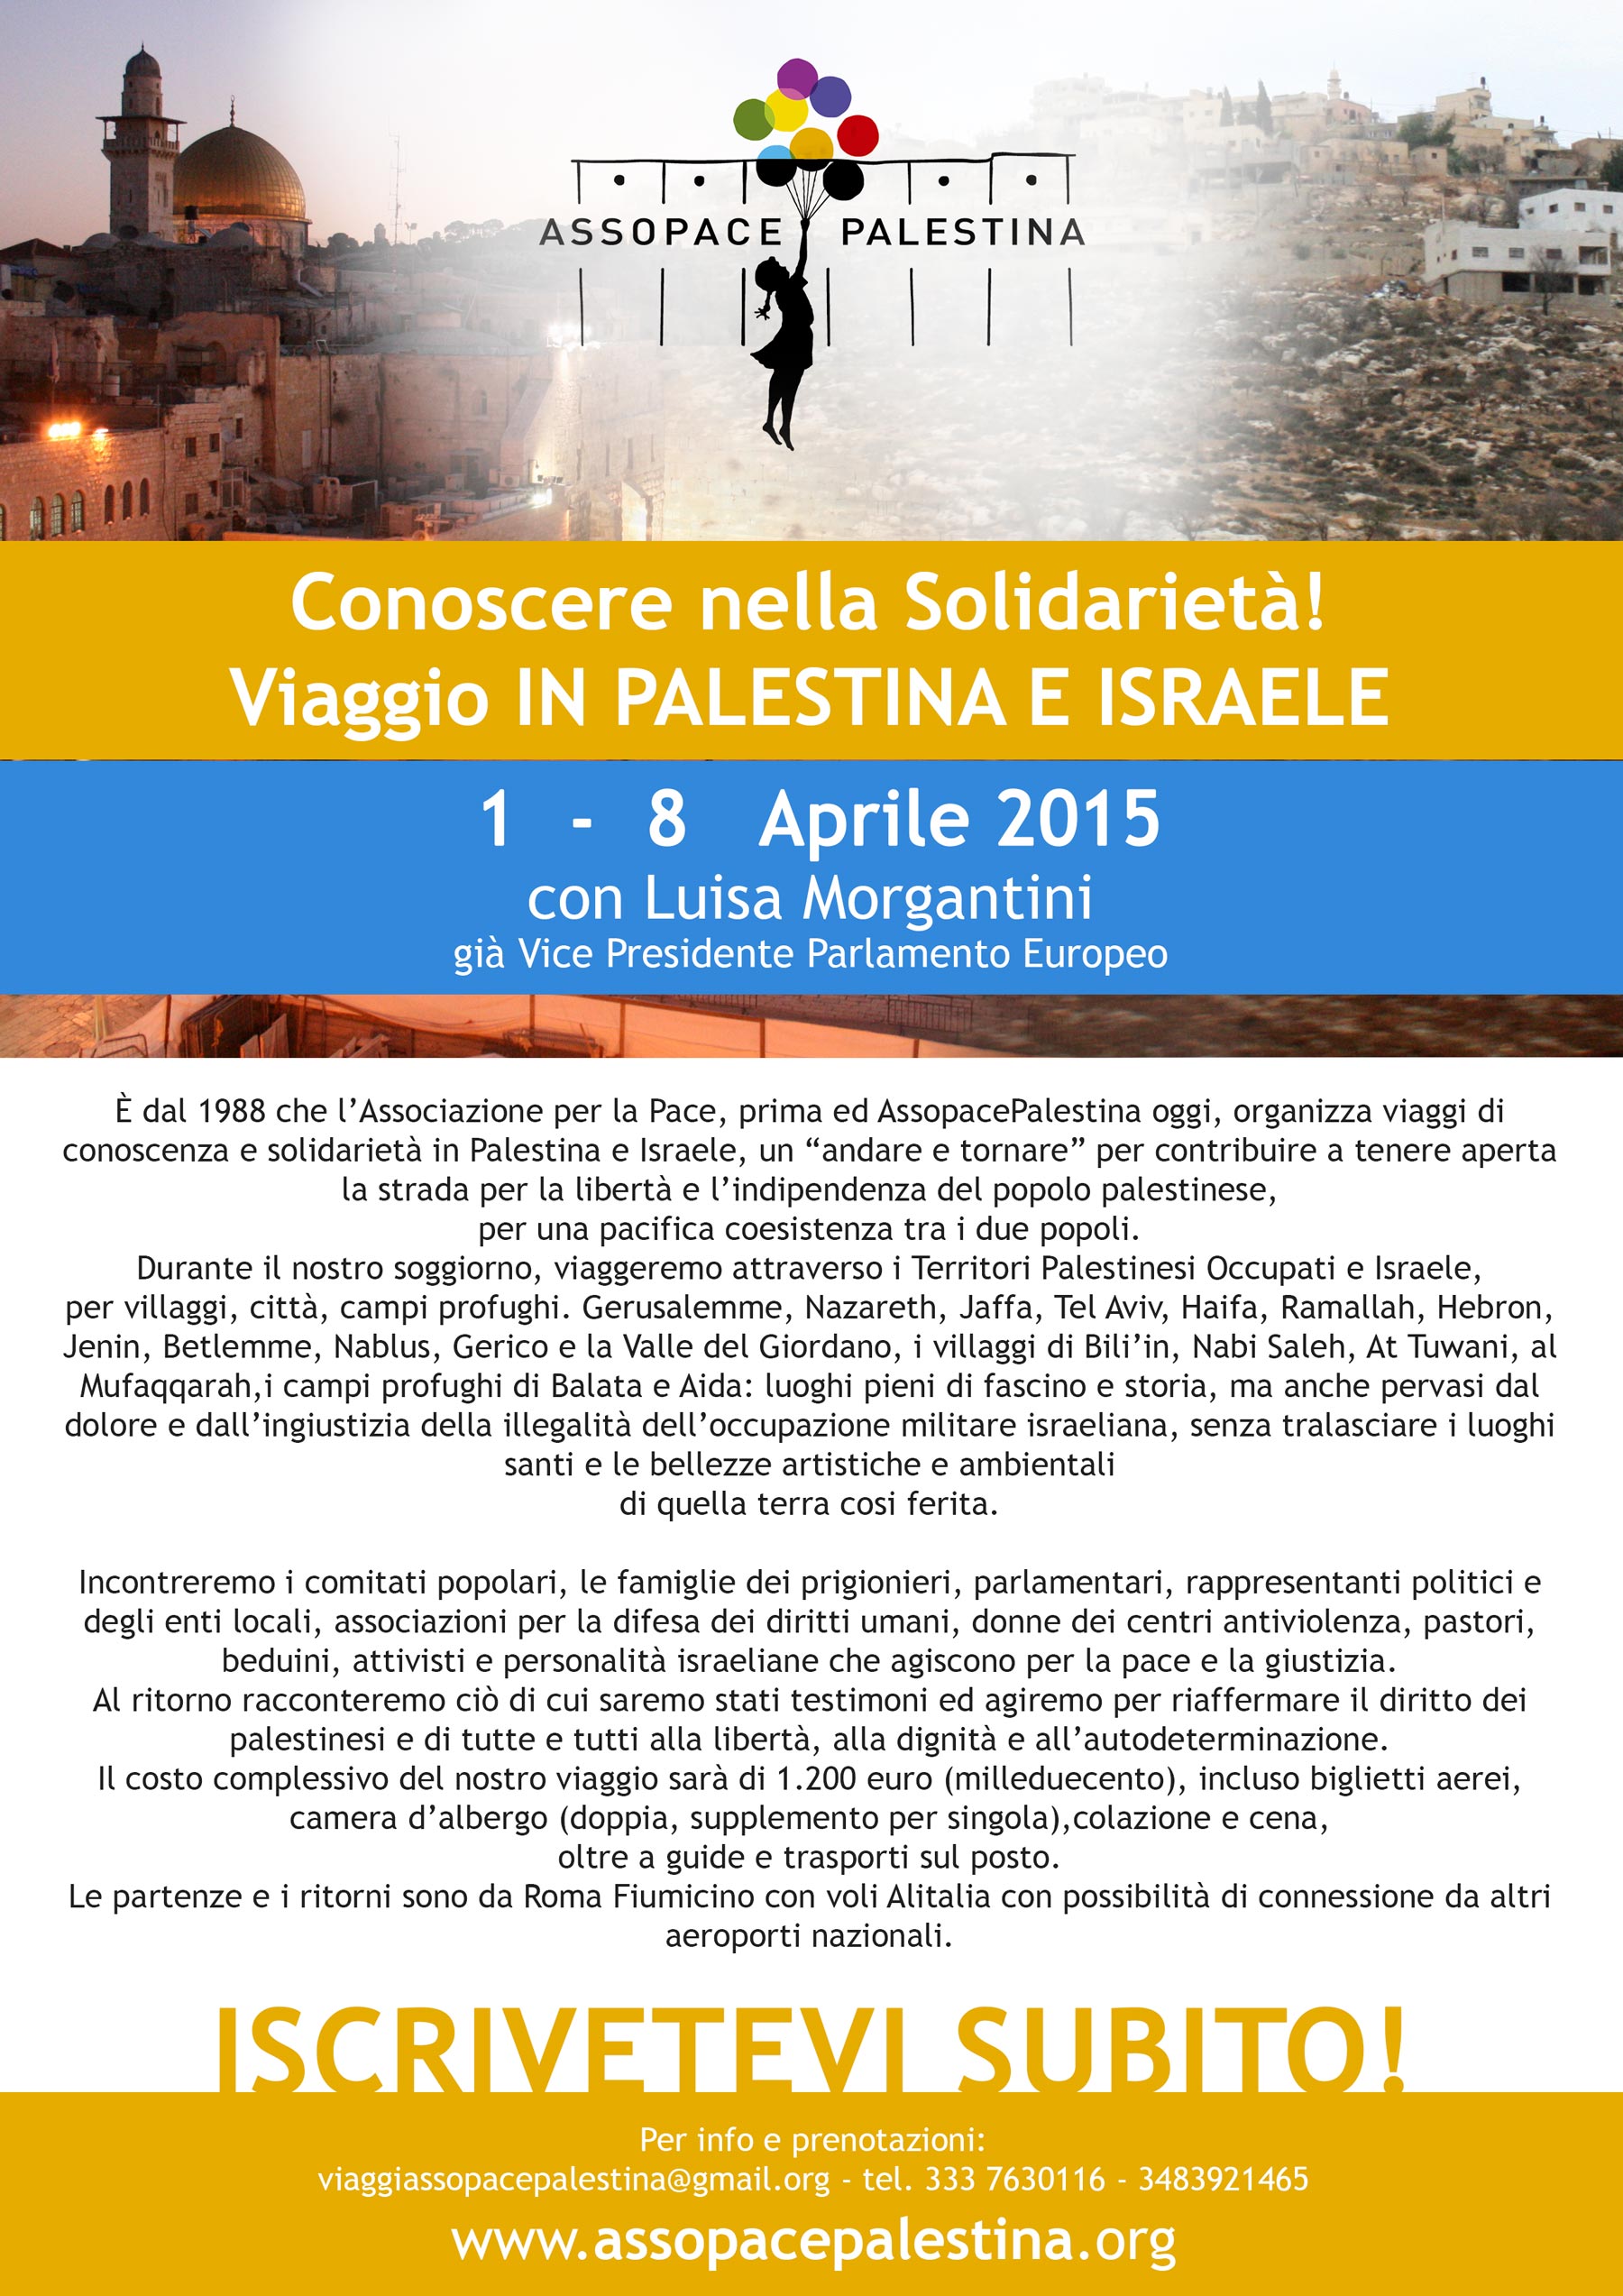 Iscrizione al viaggio in Palestina e Israele: dal 1-8 aprile 2015